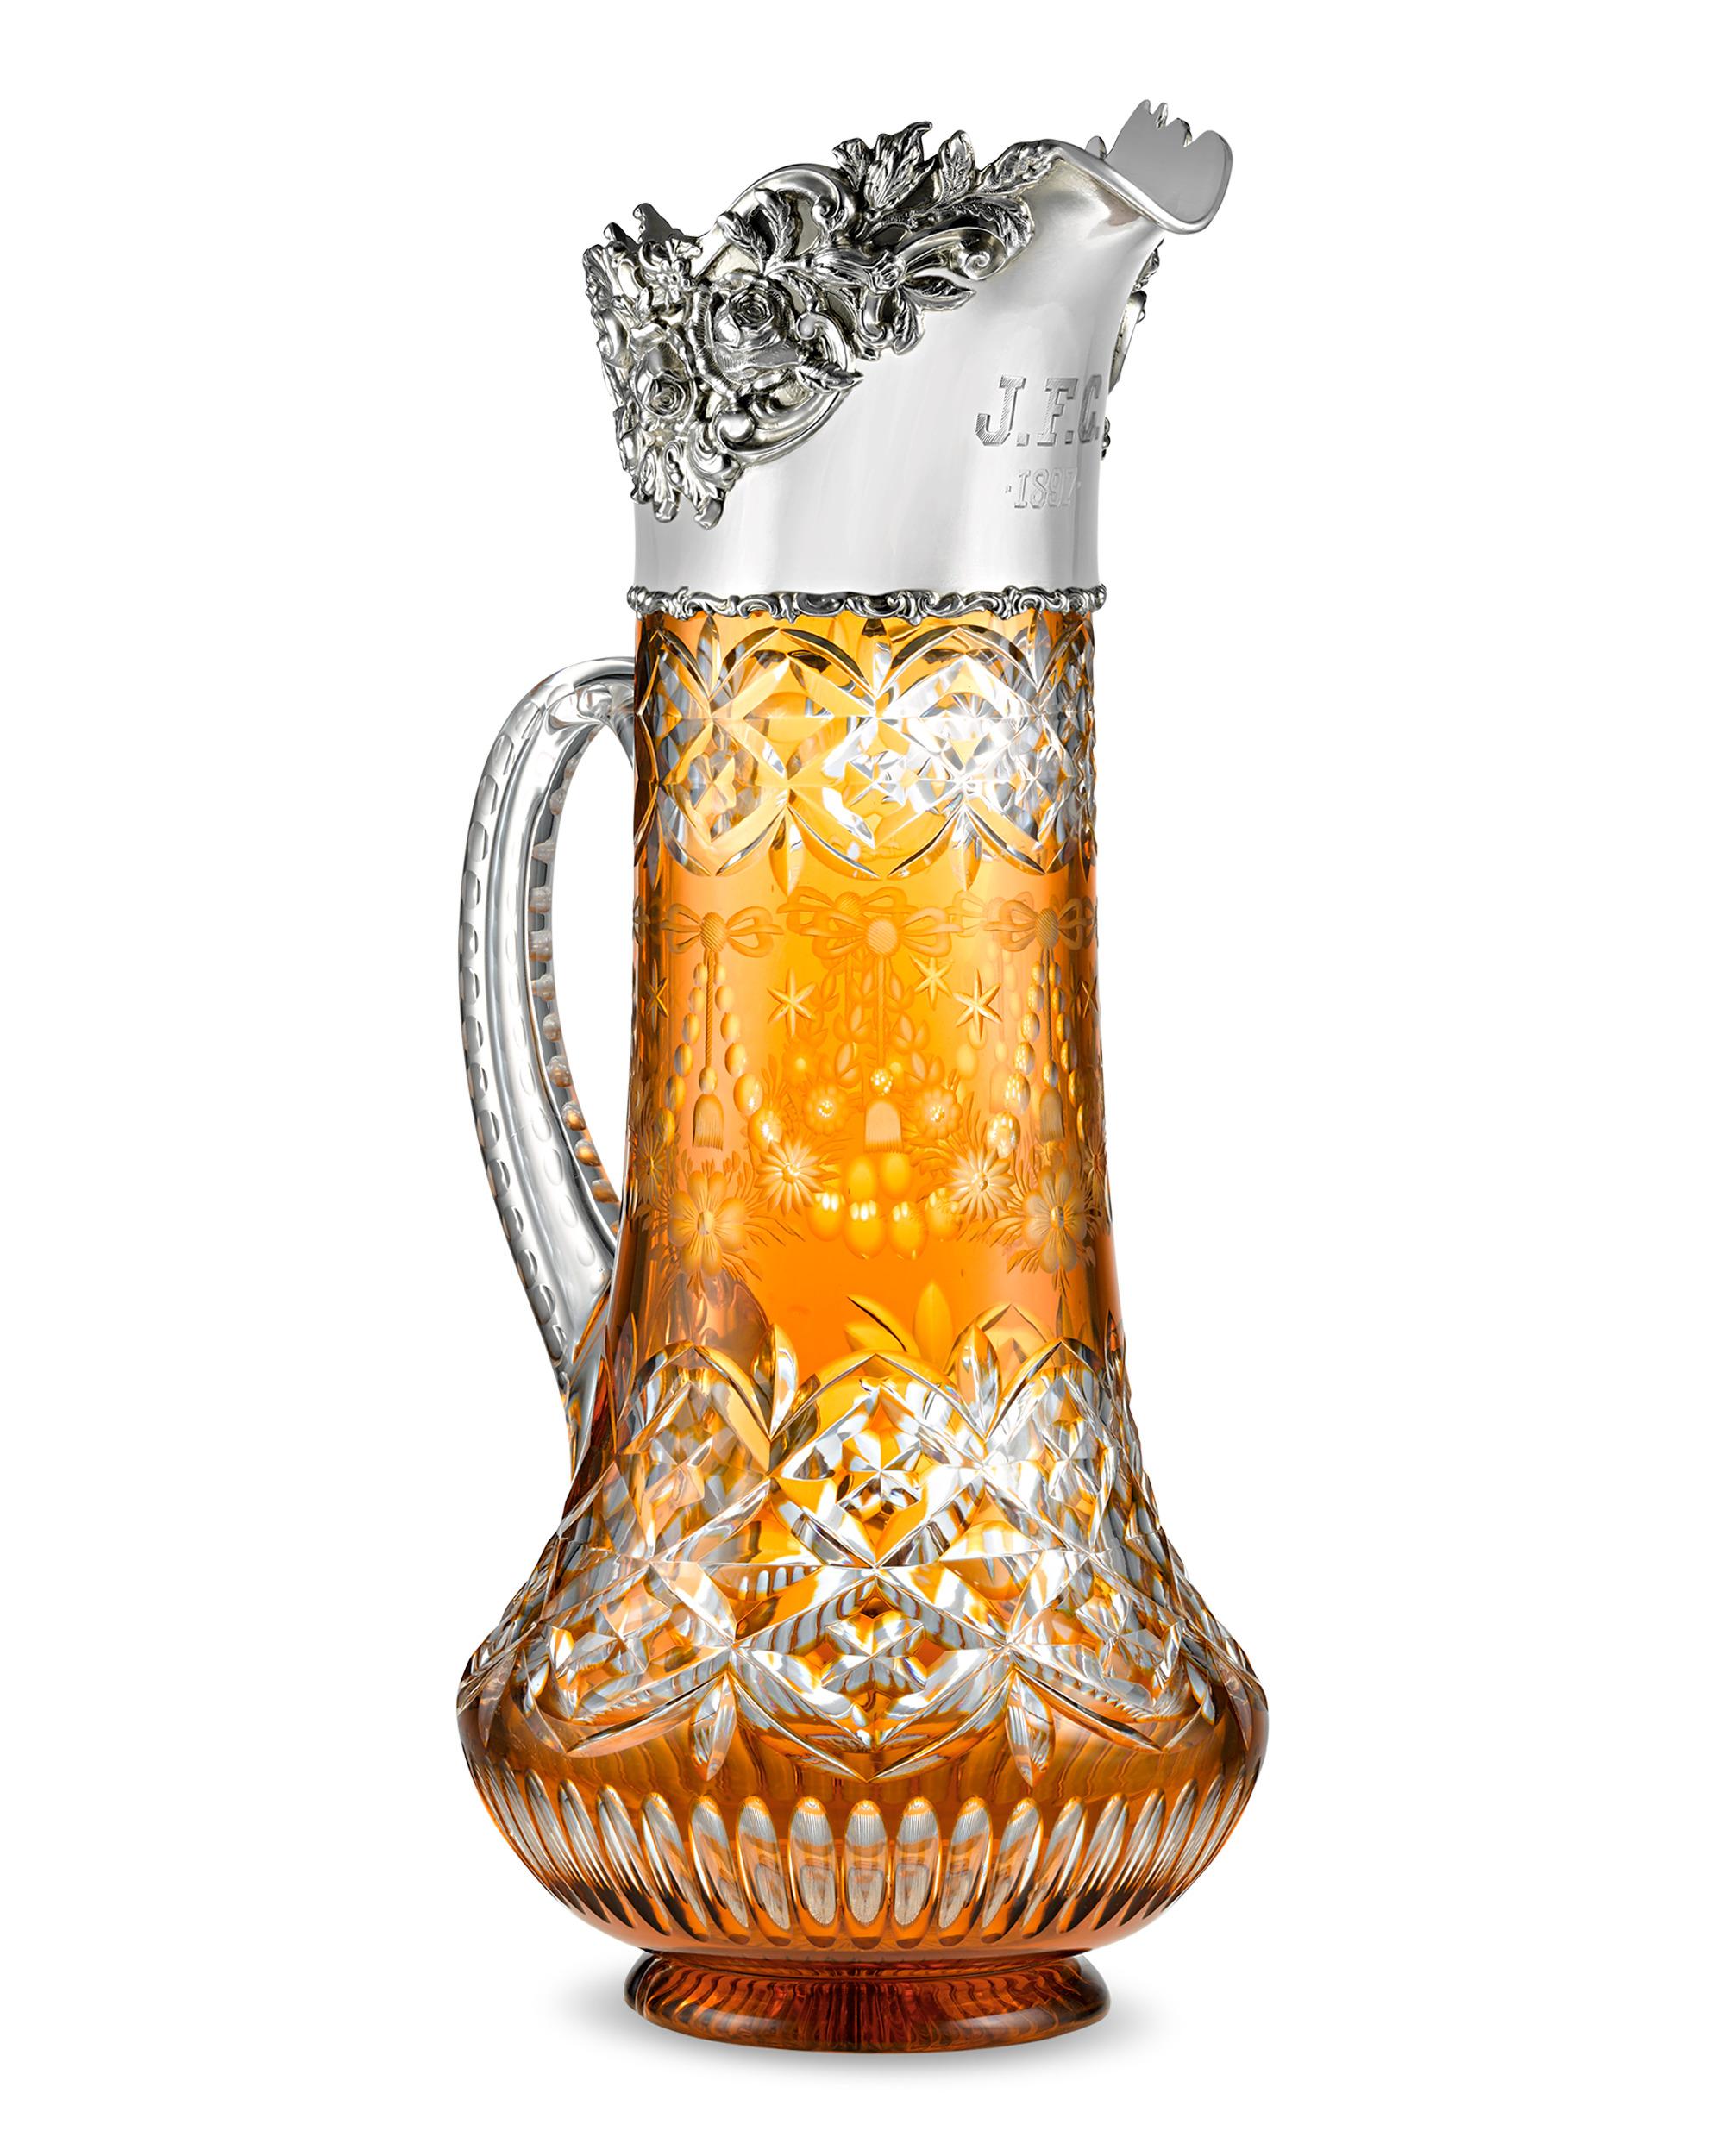 Dieser atemberaubende und seltene Krug der renommierten britischen Glasmacher Stevens & Williams zeichnet sich durch ein exquisites Butterscotch-Cut-to-Clear-Design mit Blattwerkmotiven aus. Abgesehen von der begehrten orangefarbenen Farbe ist der